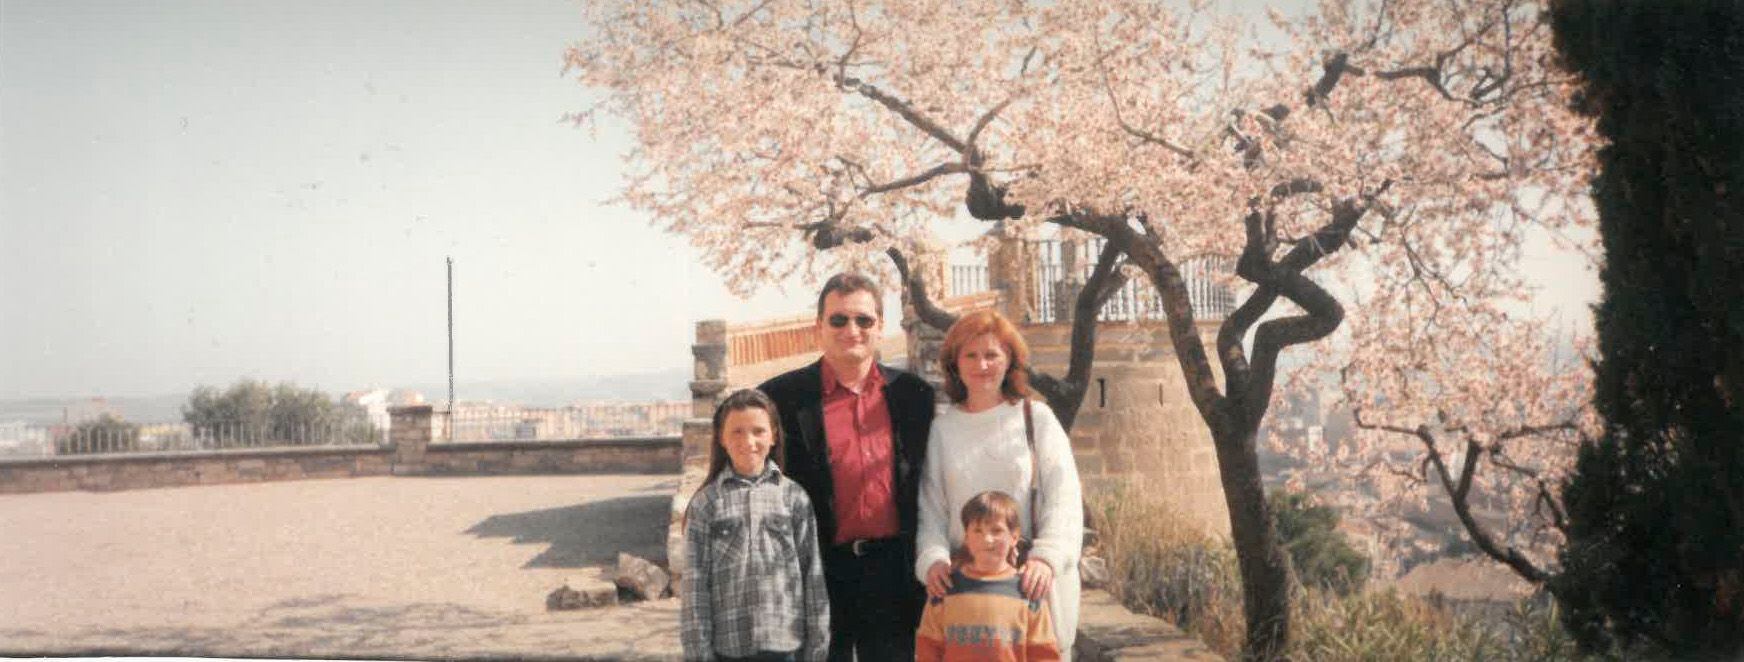 Josep López y Joana Esteban, junto a sus hijas, Klara y Amanda, en una foto del archivo familiar tomada en los años noventa. 